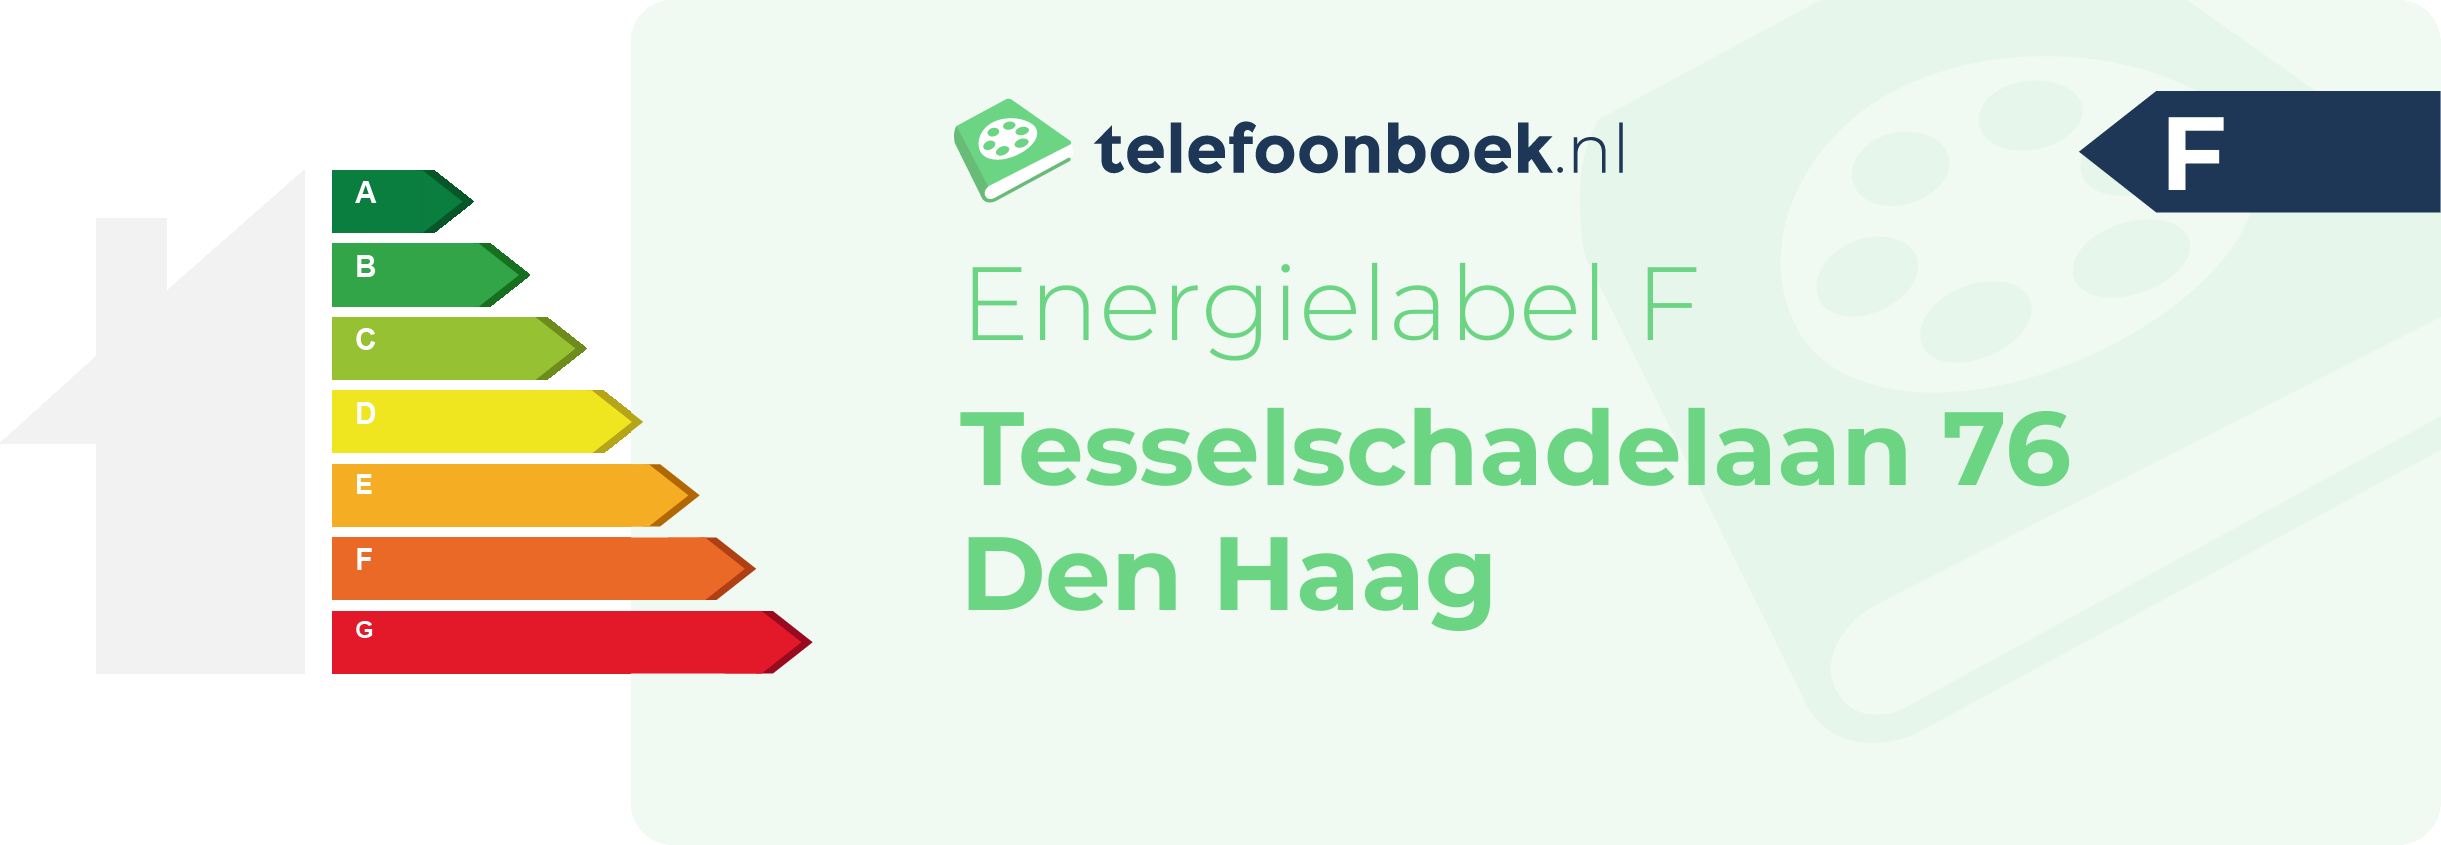 Energielabel Tesselschadelaan 76 Den Haag